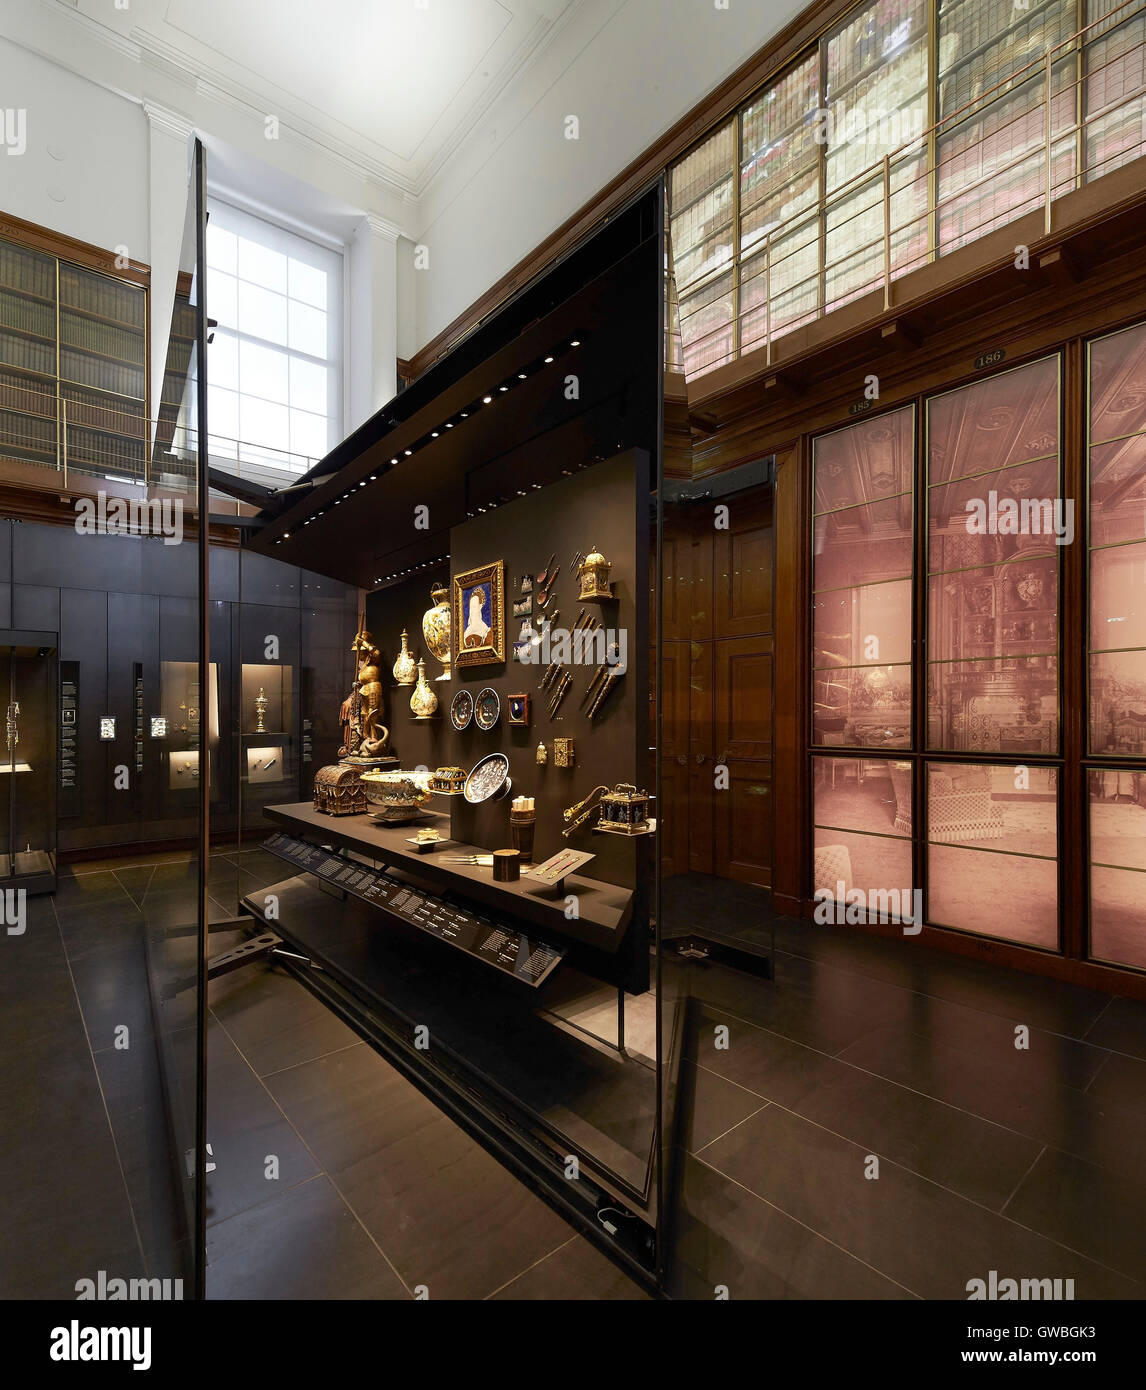 Rautenförmigen Schaufenster im Galerieraum. Waddesdon Vermächtnis Galerie im British Museum, London, Vereinigtes Königreich. Architekt: Stanton Stockfoto